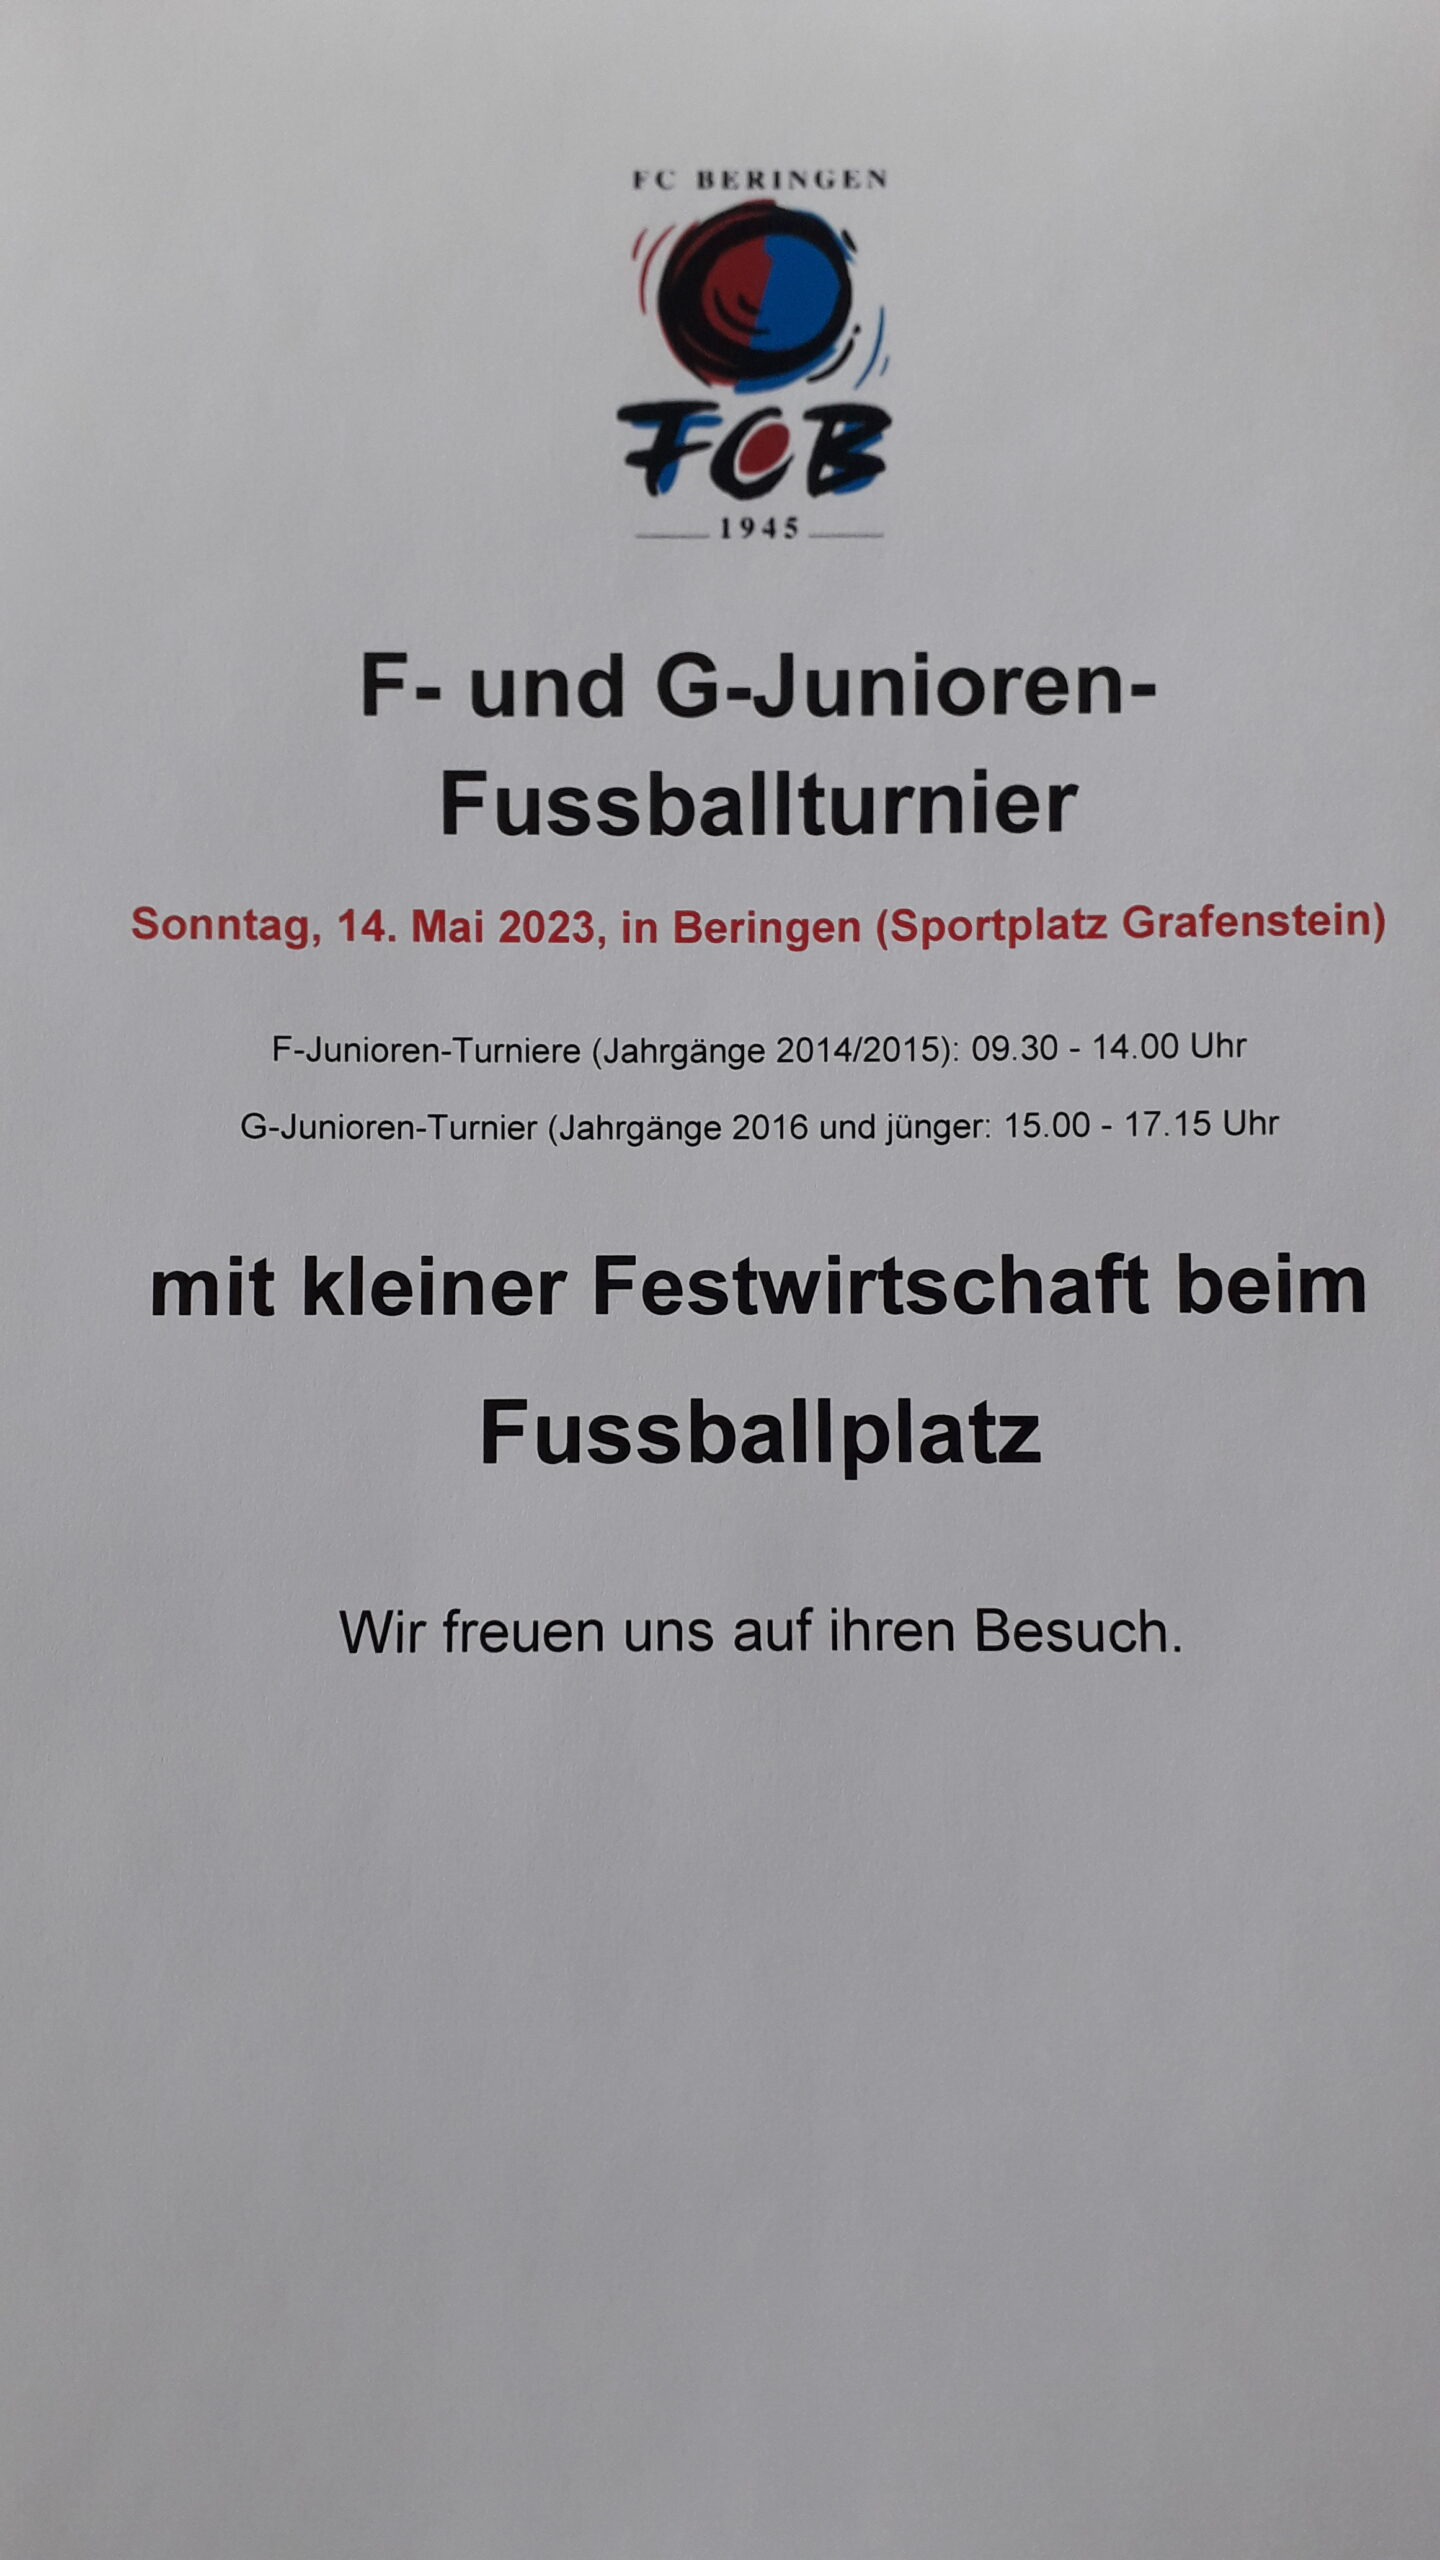 F- und G-Junioren-Fussballturnier